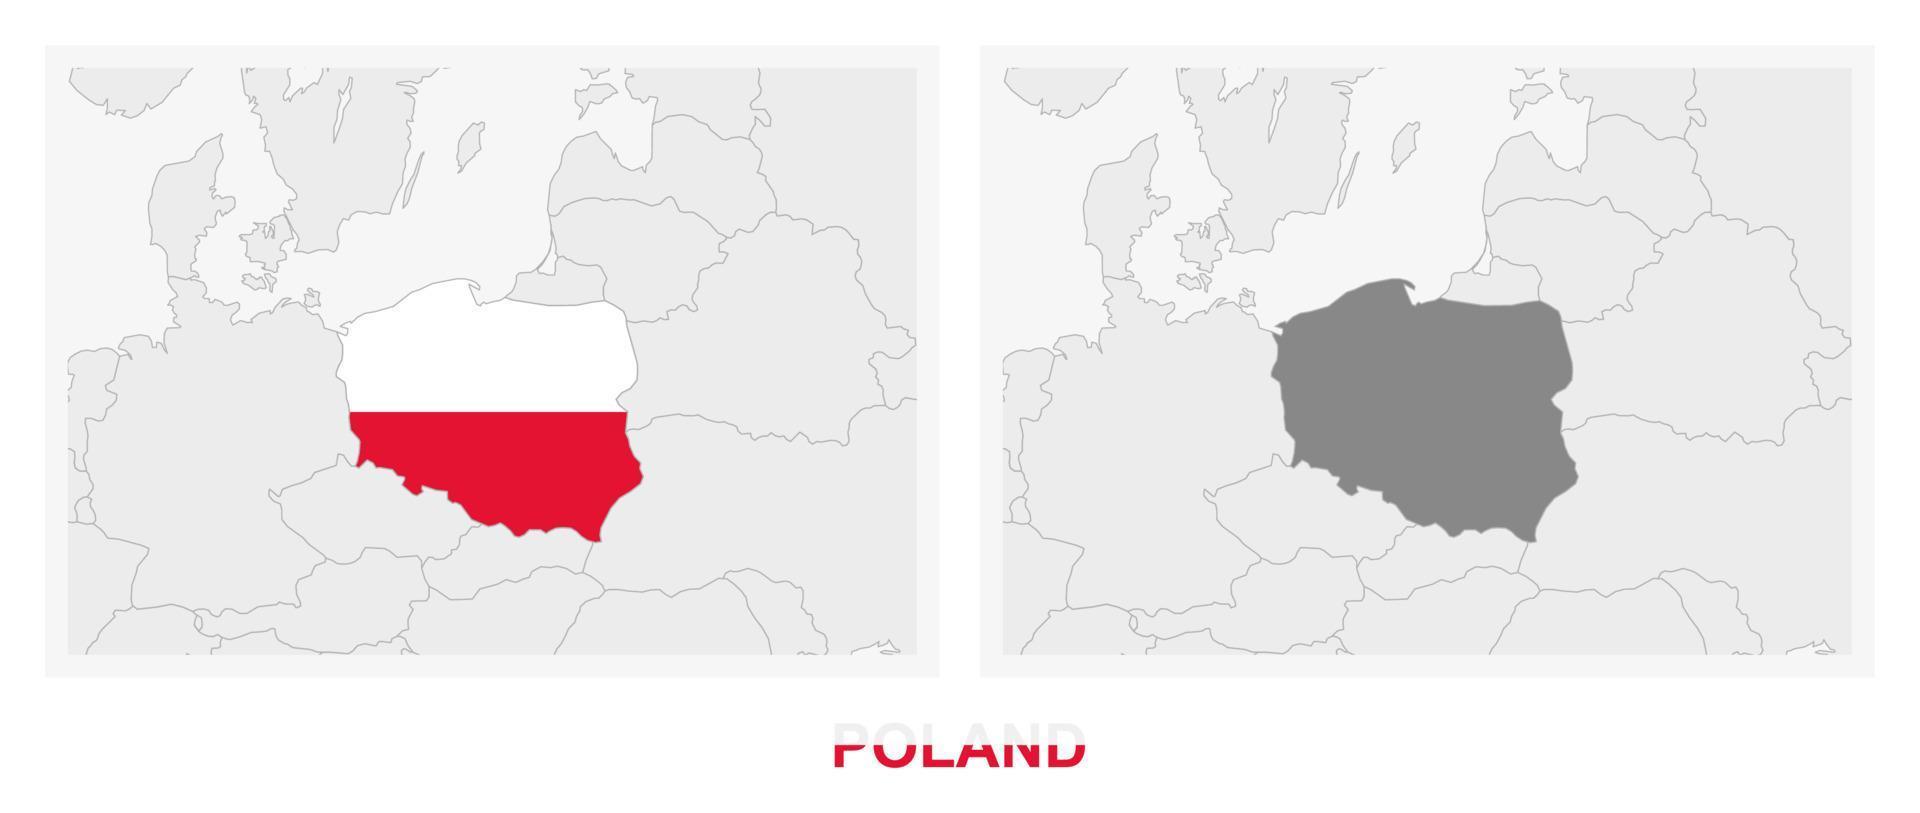 dos versiones del mapa de polonia, con la bandera de polonia y resaltada en gris oscuro. vector